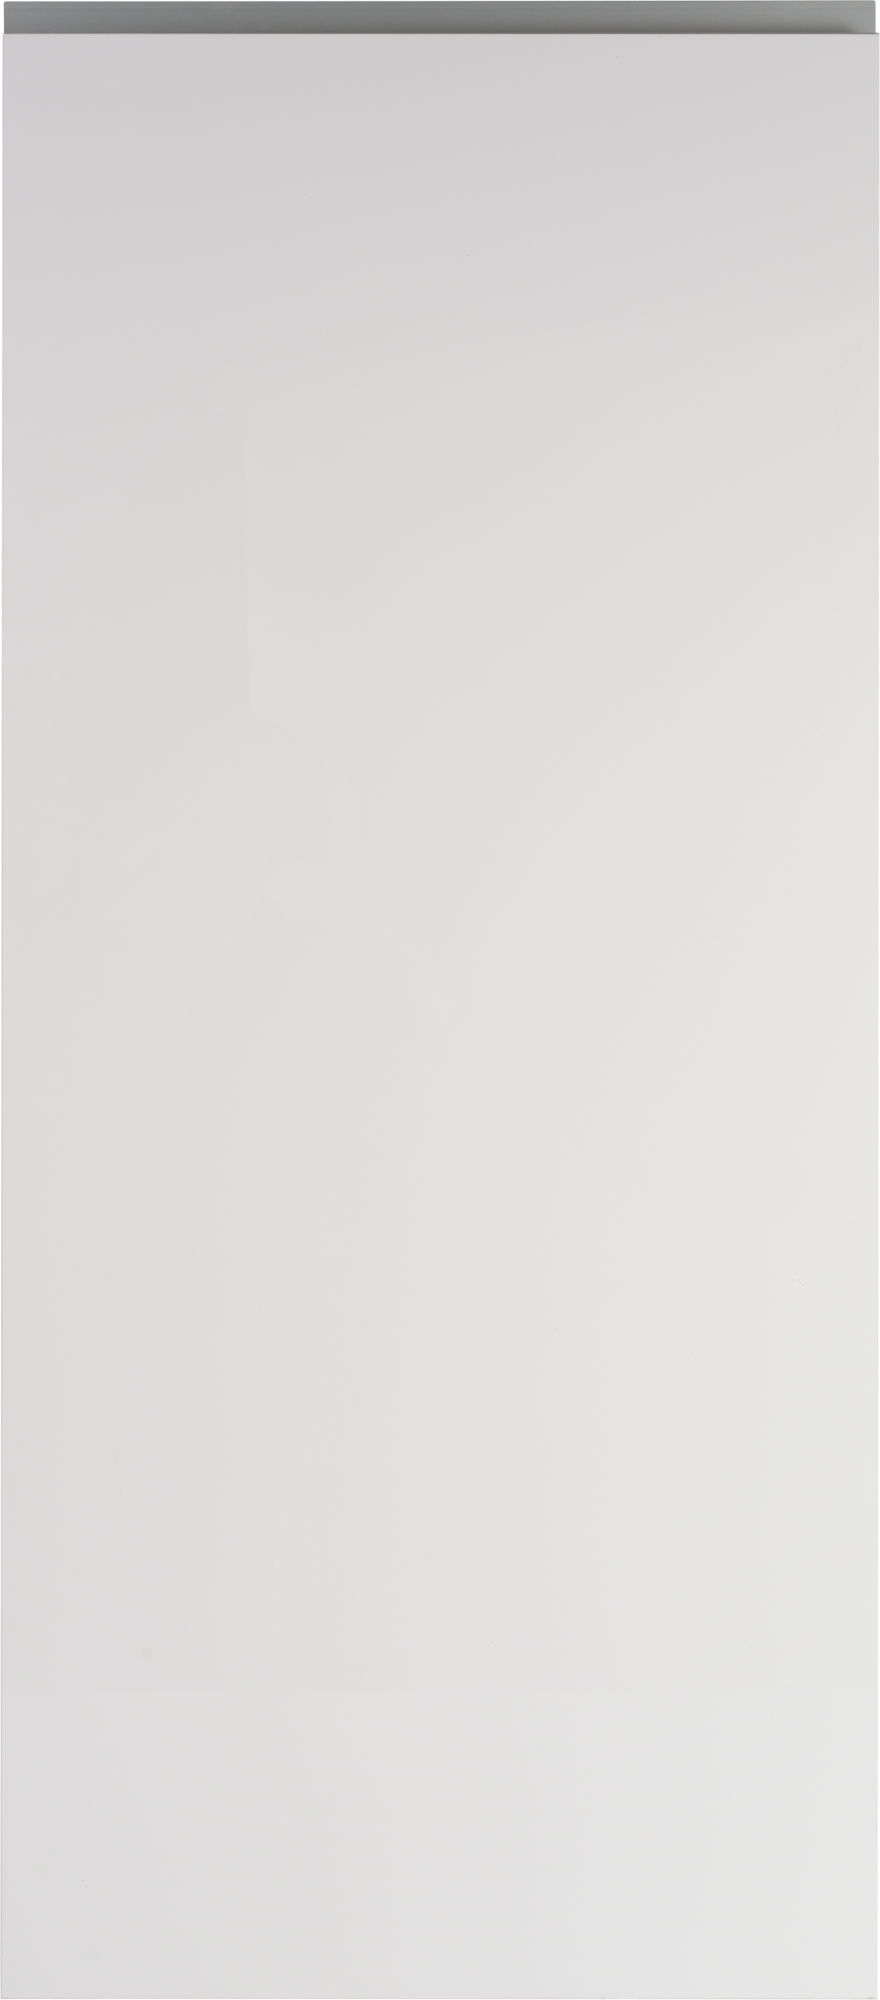 Puerta para mueble cocina mikonos blanco brillo 59,7x137,3cm